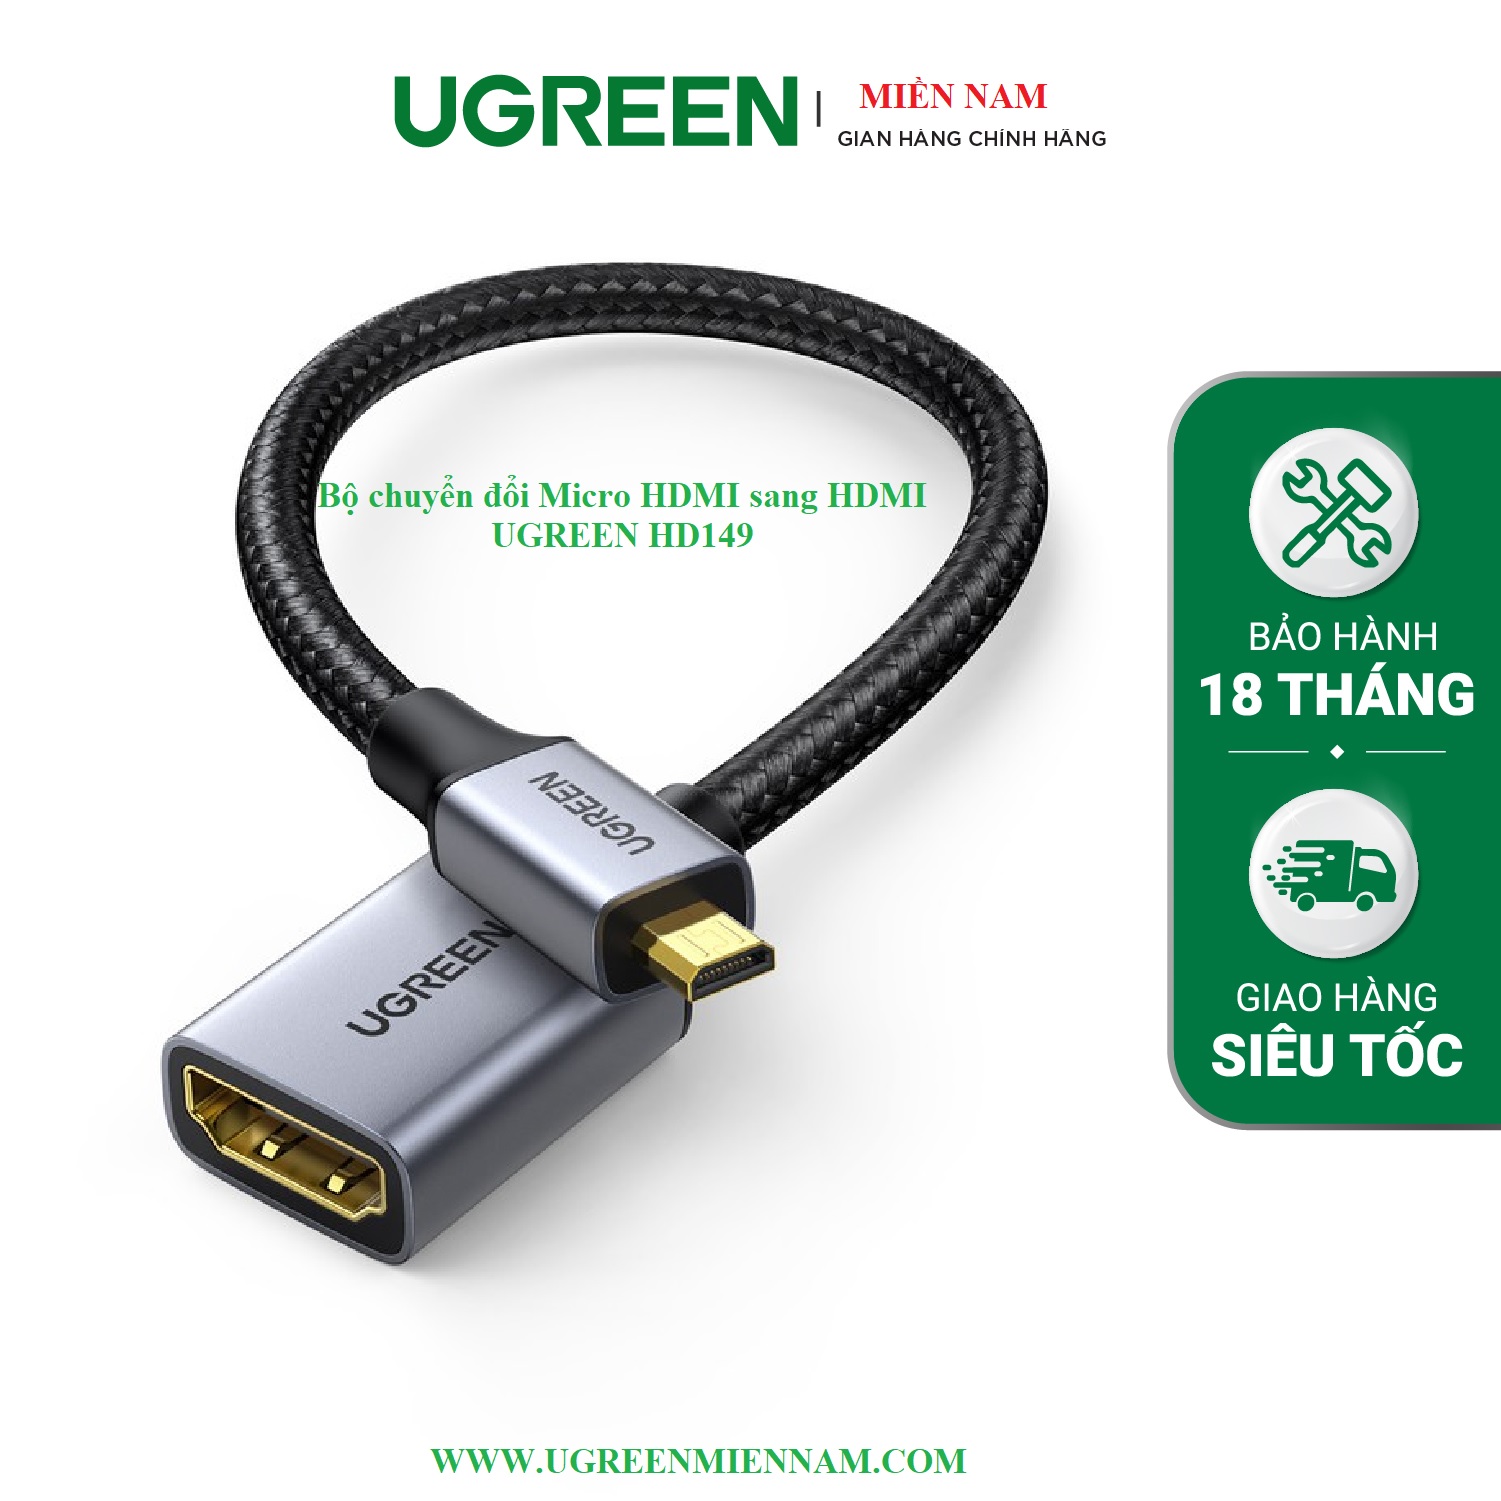 Bộ chuyển đổi Micro HDMI sang HDMI UGREEN HD149 – Ugreen Miền Nam